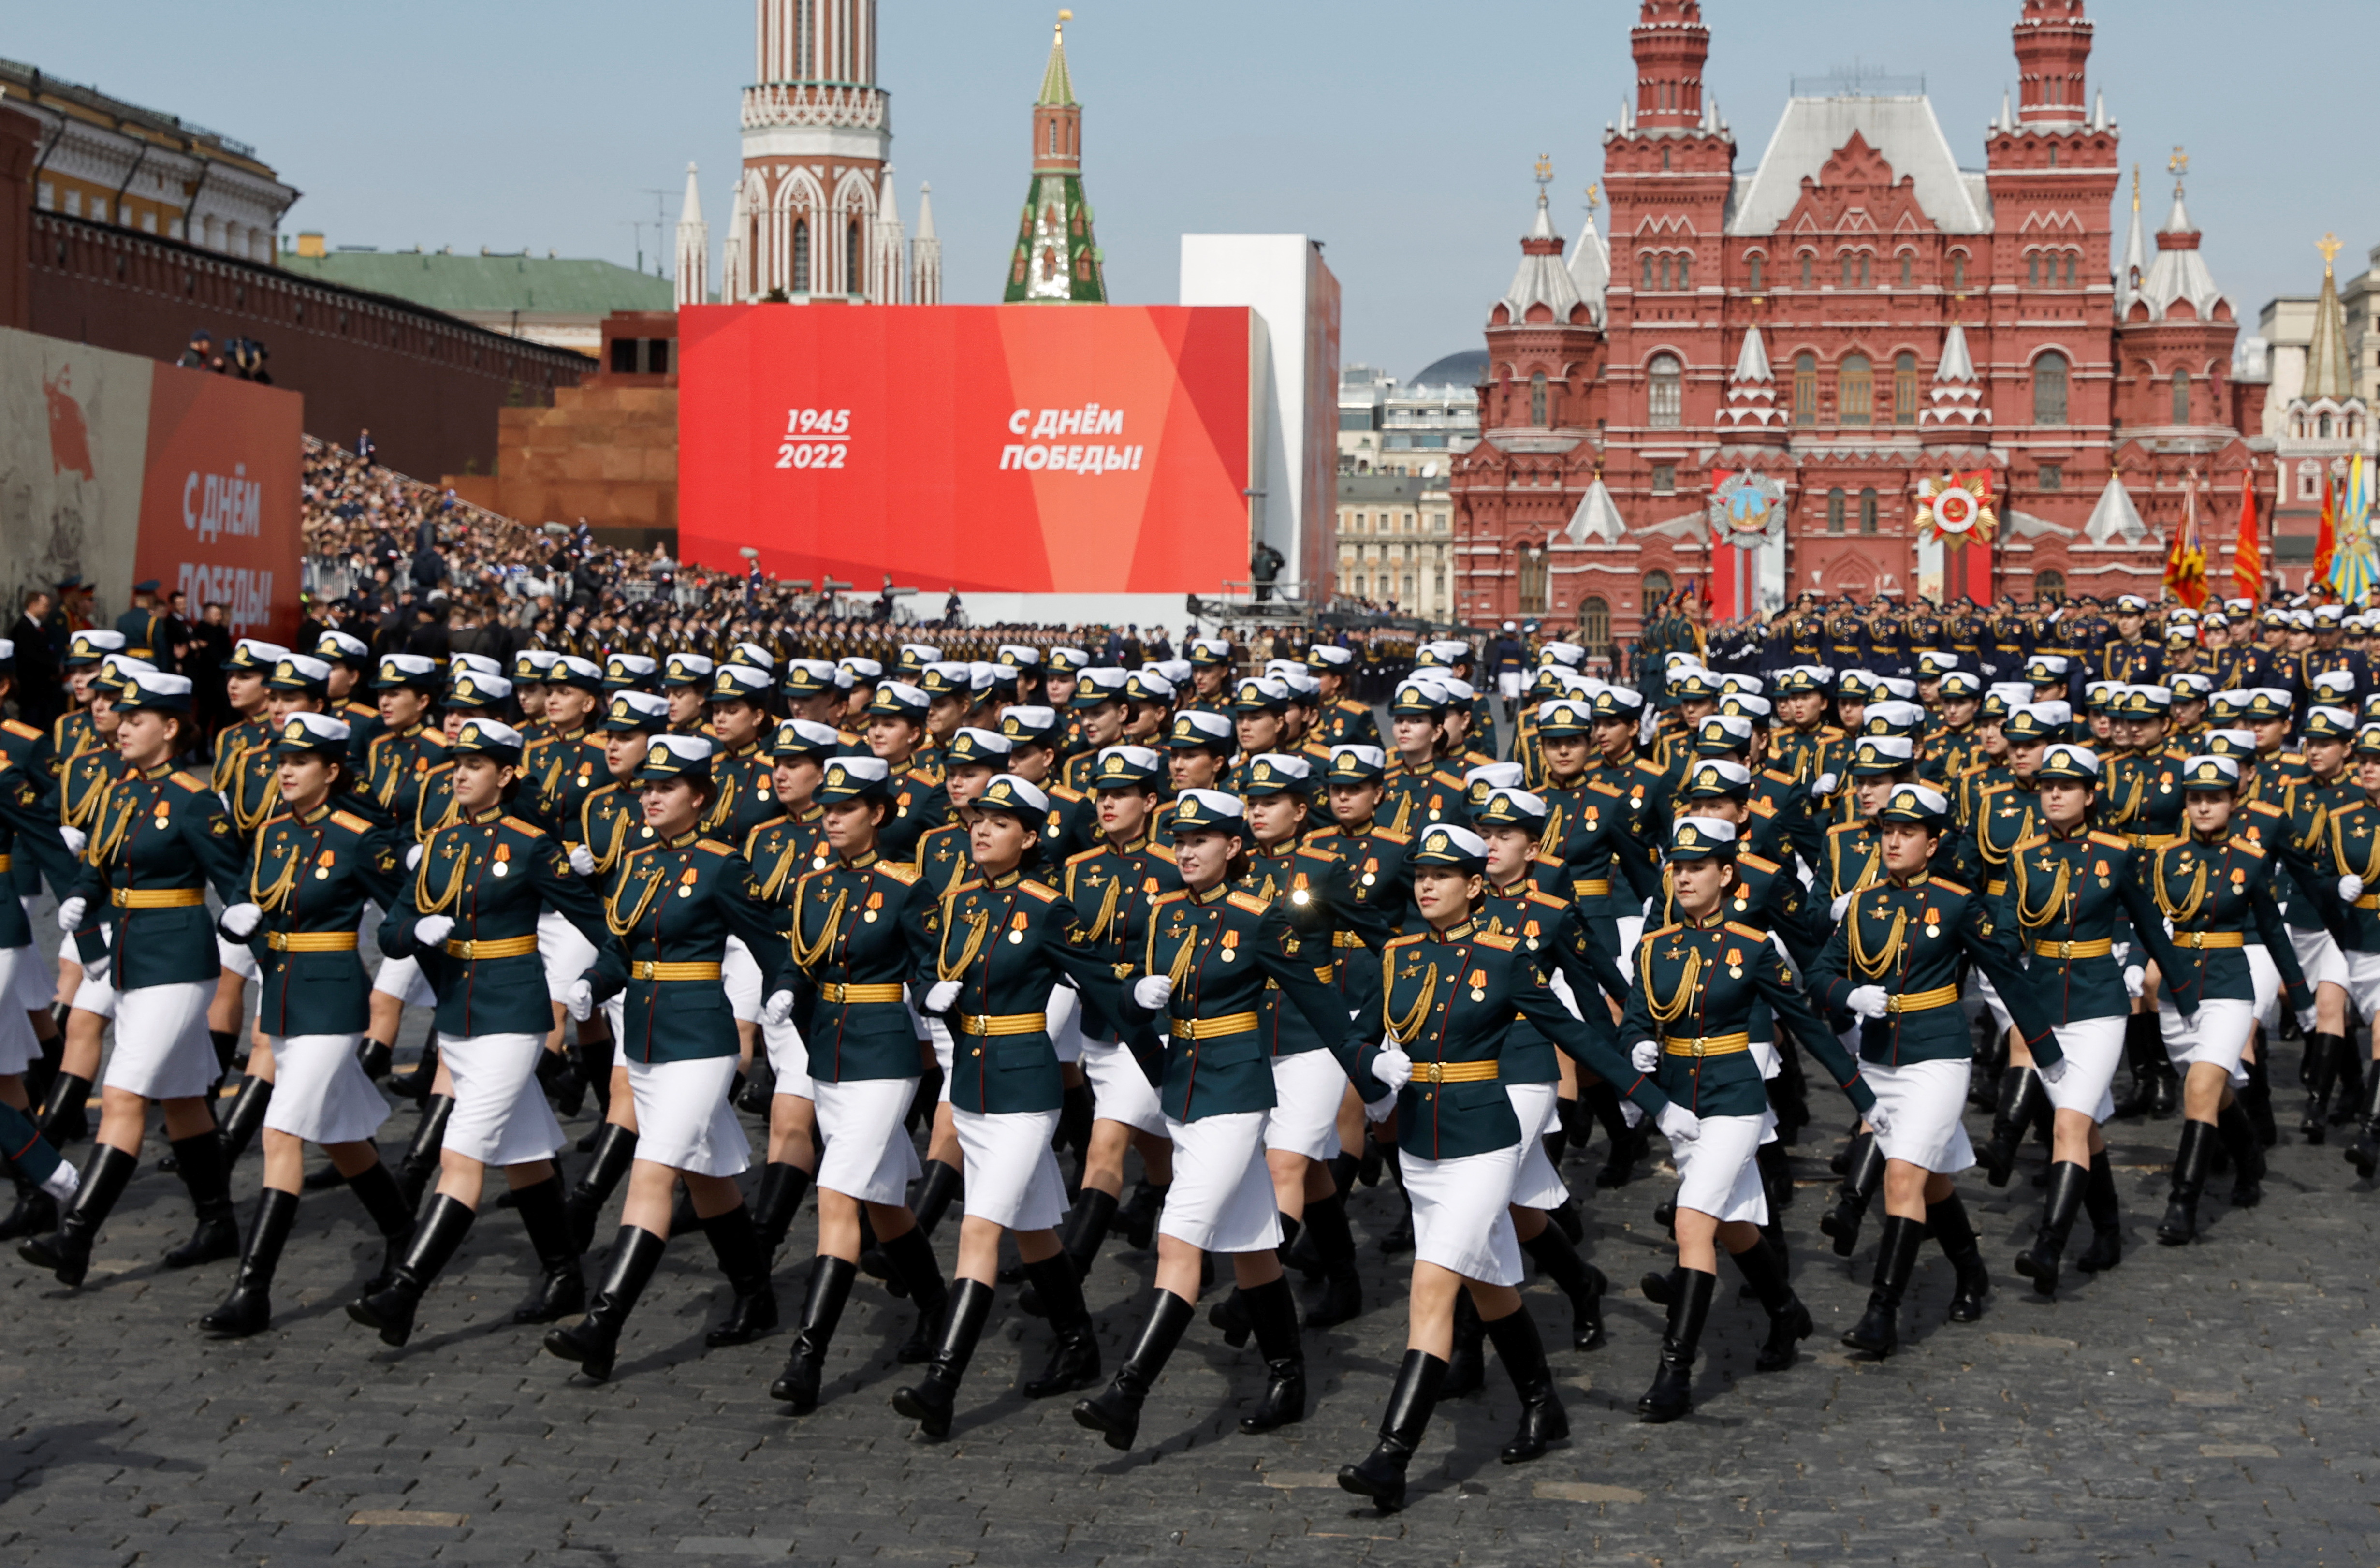 Miembros del servicio ruso marchan durante un ensayo para un desfile militar que marca el aniversario de la victoria sobre la Alemania nazi en la Segunda Guerra Mundial en la Plaza Roja en el centro de Moscú, Rusia, el 7 de mayo de 2022. REUTERS/Maxim Shemetov